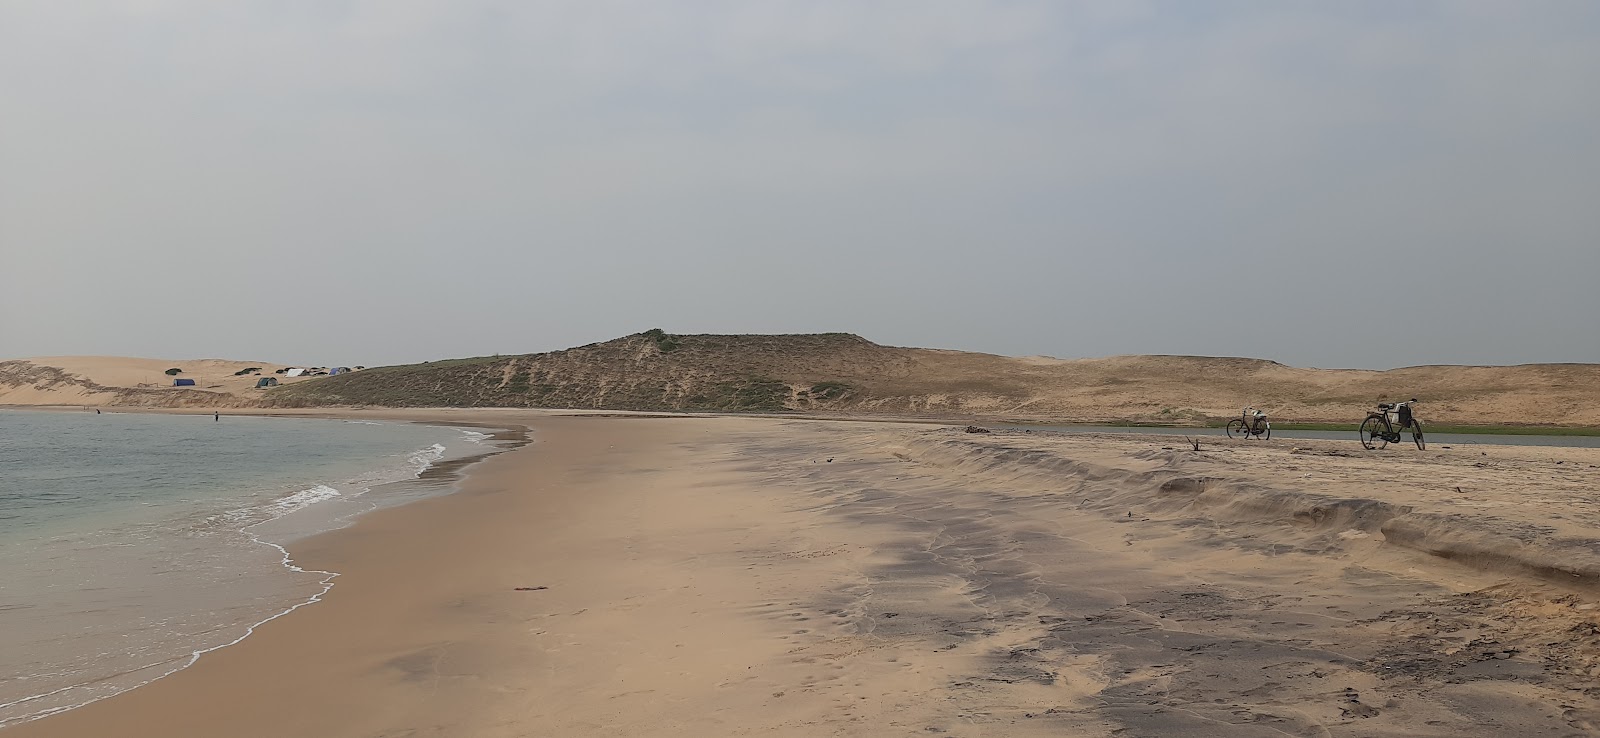 Photo de Mahala Sea Beach - endroit populaire parmi les connaisseurs de la détente